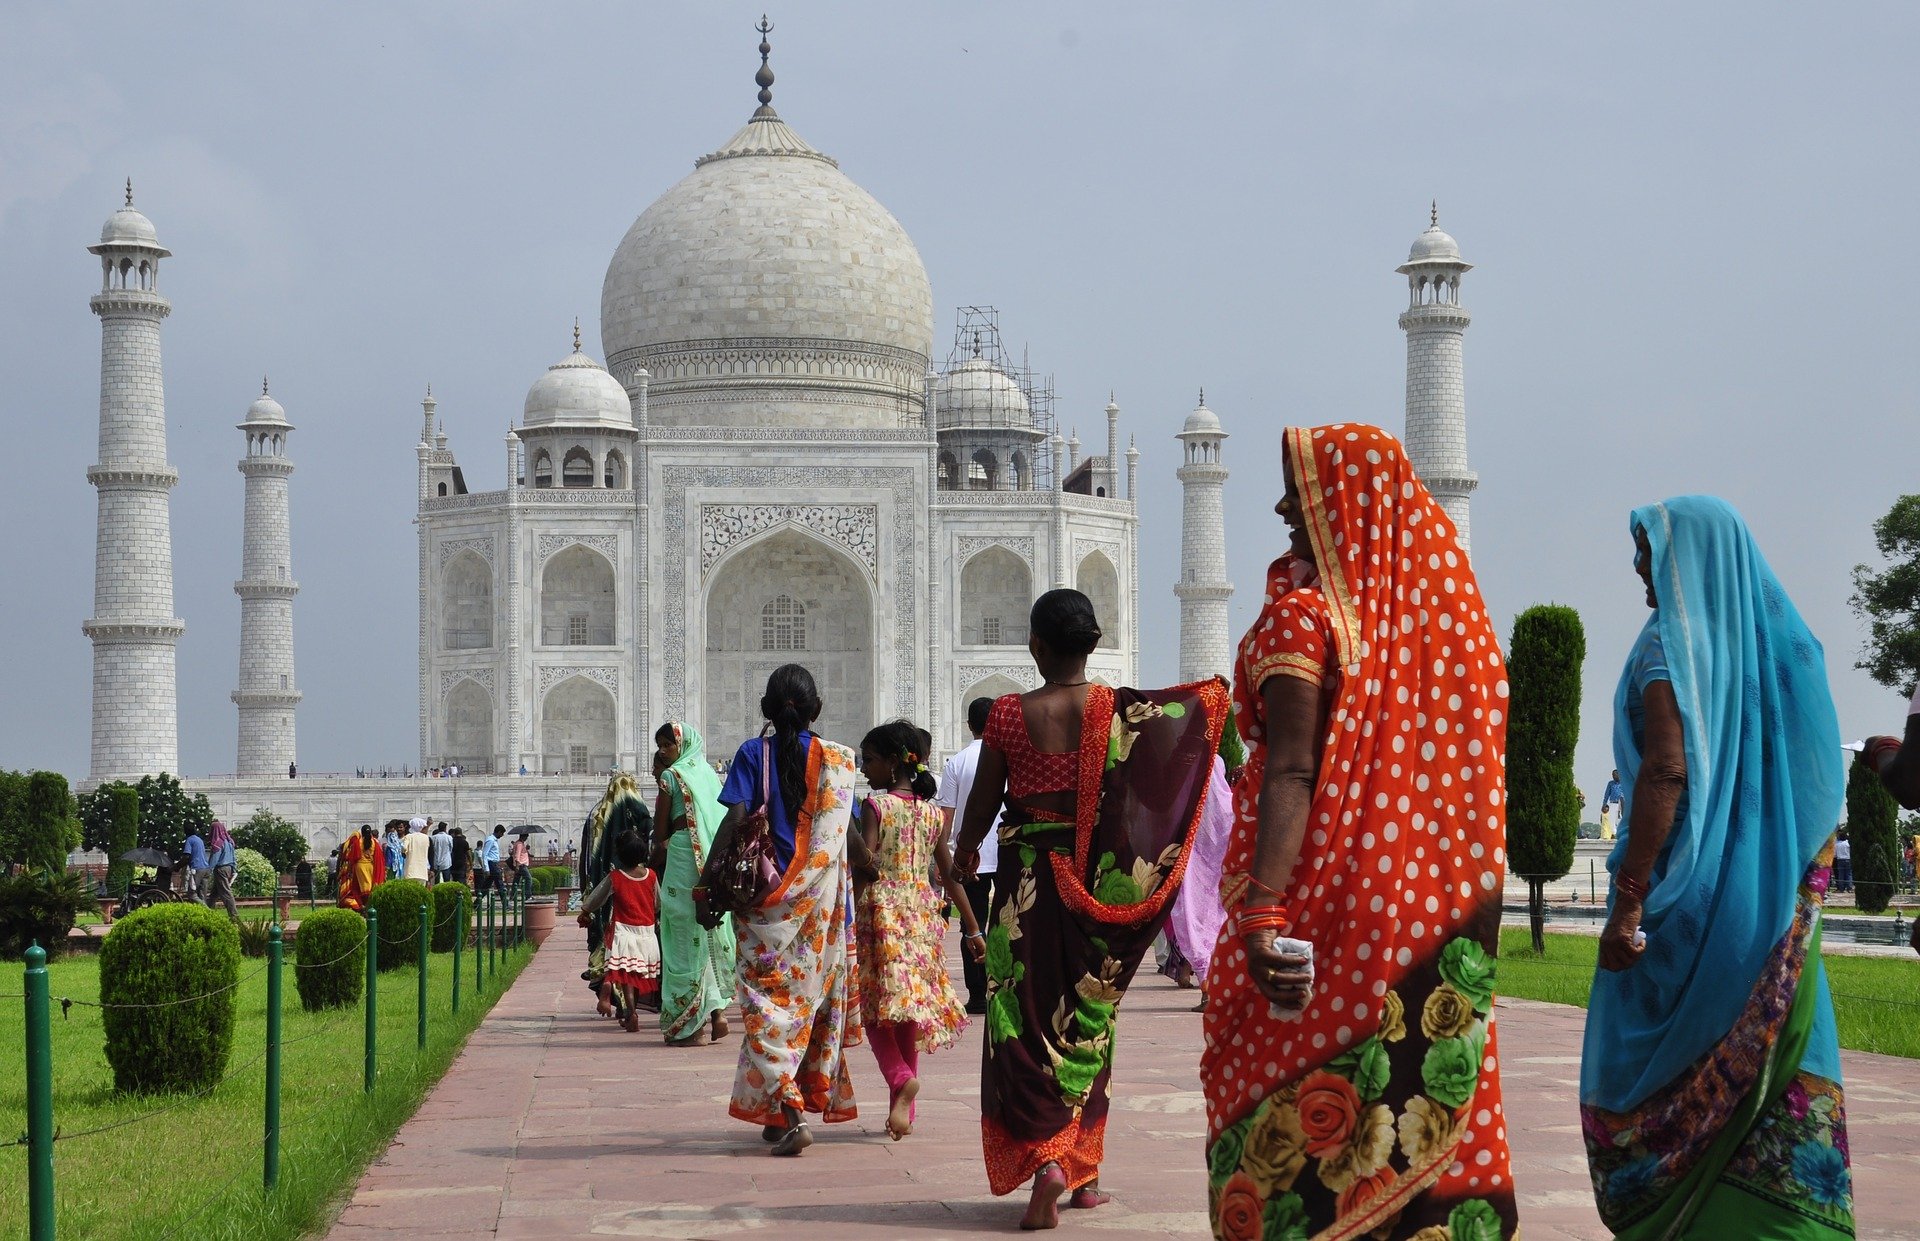 Taj Mahal and people walking